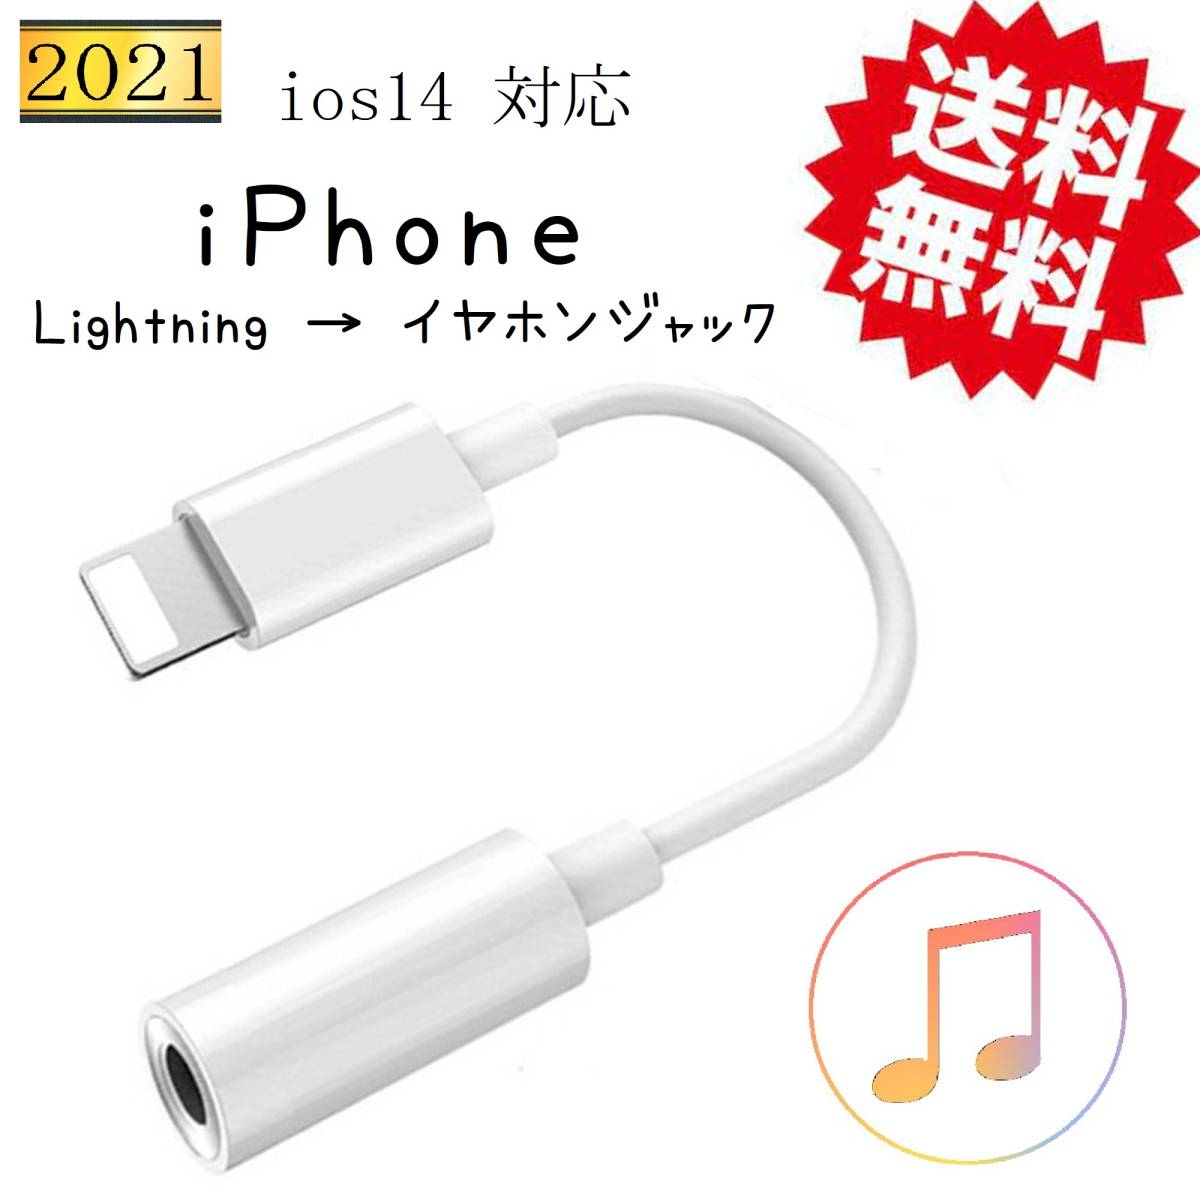 iPhone イヤホンジャック変換アダプタ ライトニング 3.5mm端子 イヤホン変換 変換ケーブル Lightning 音楽再生 ヘッドフォンジャックの画像1